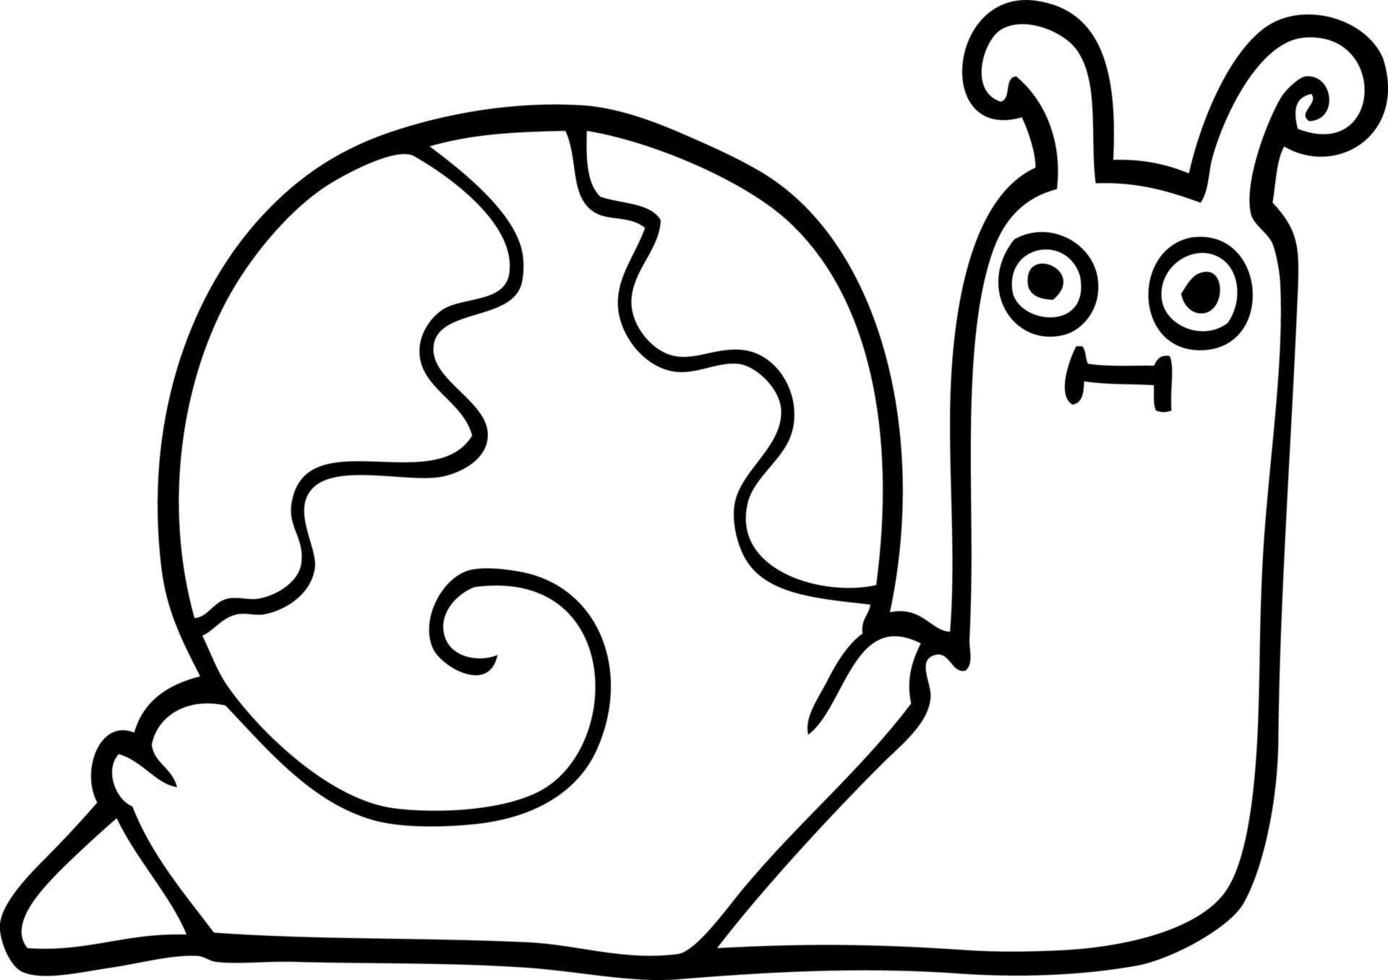 escargot de dessin animé dessin au trait vecteur